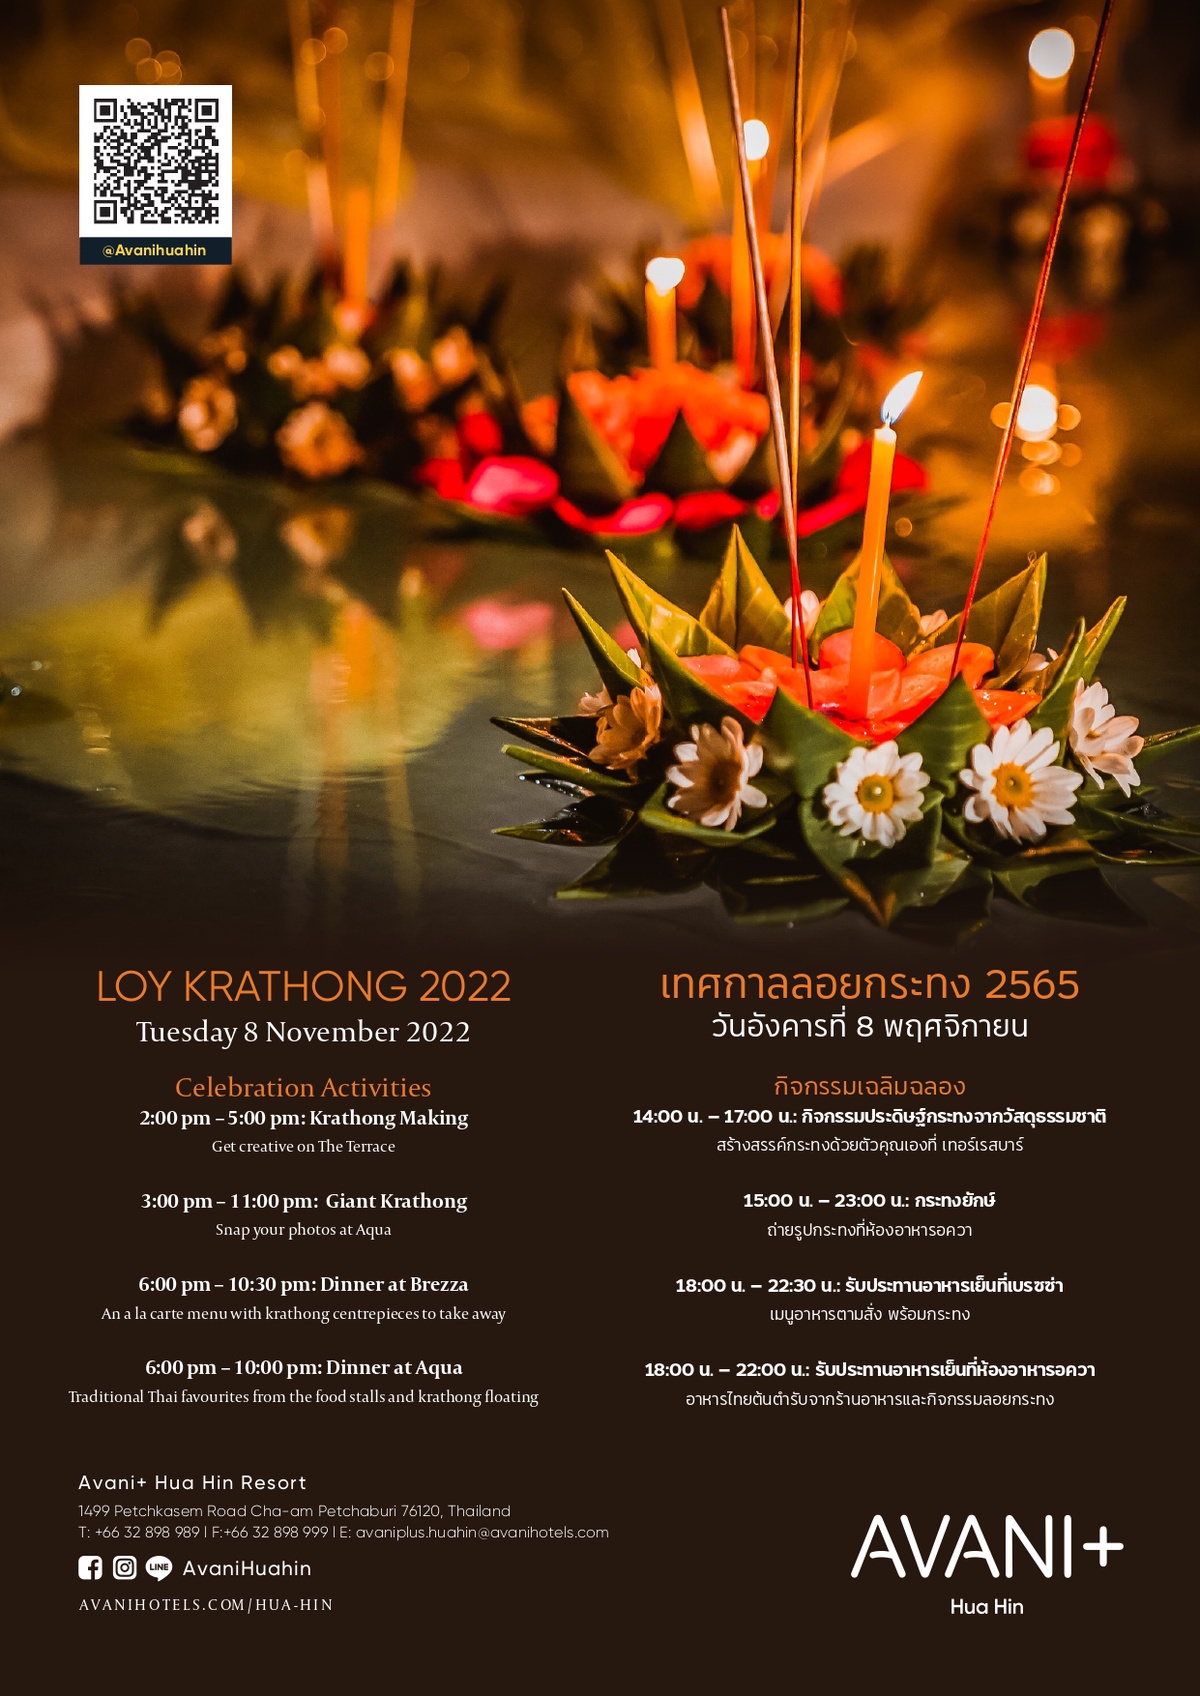 Loy Krathong on Tuesday 8 November 2022 at AVANI Hua Hin Resort